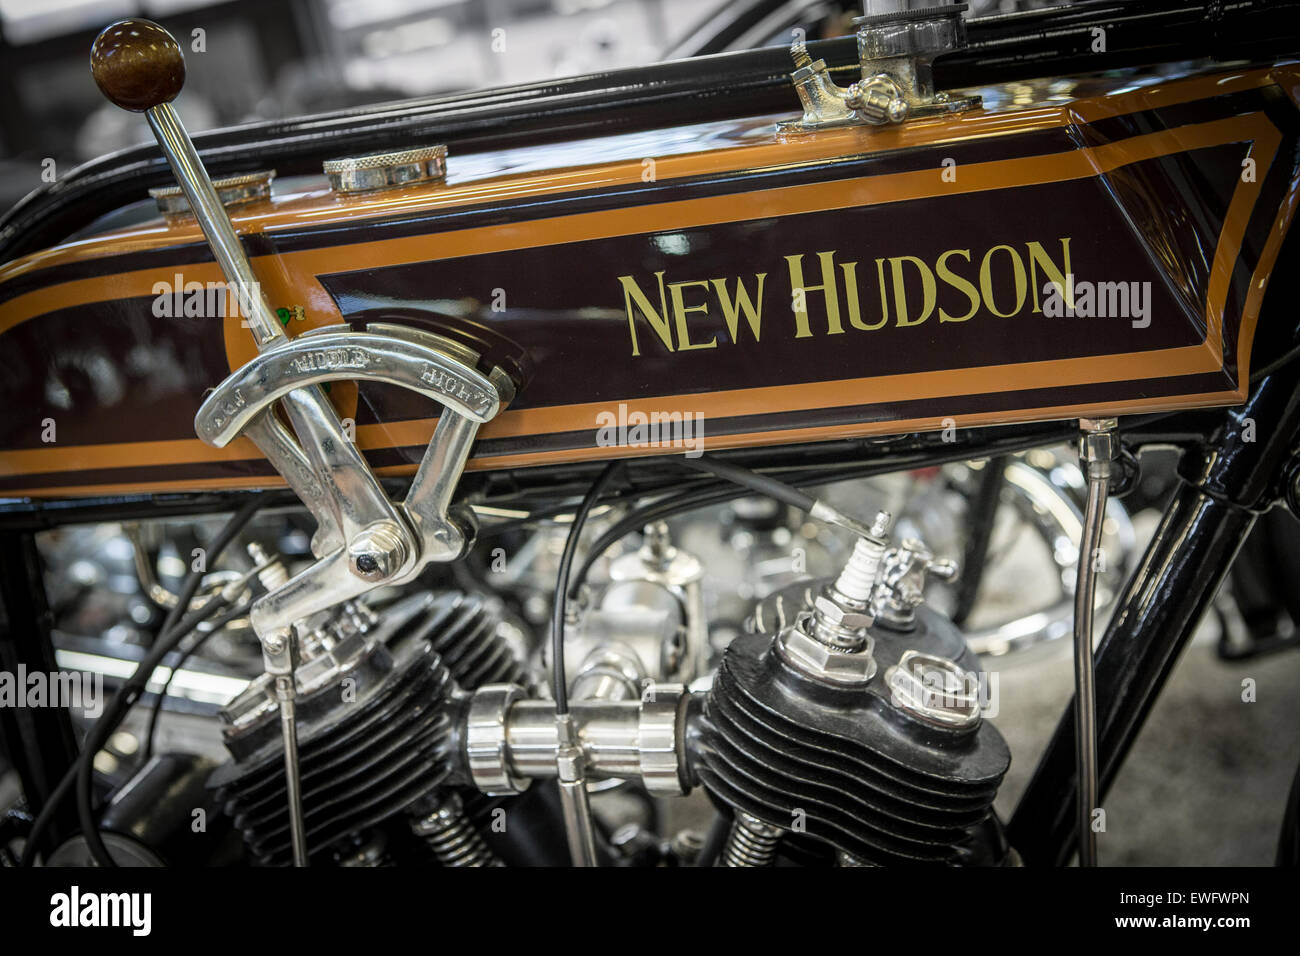 Nouvelle marque de moto classique Hudson insignia Banque D'Images